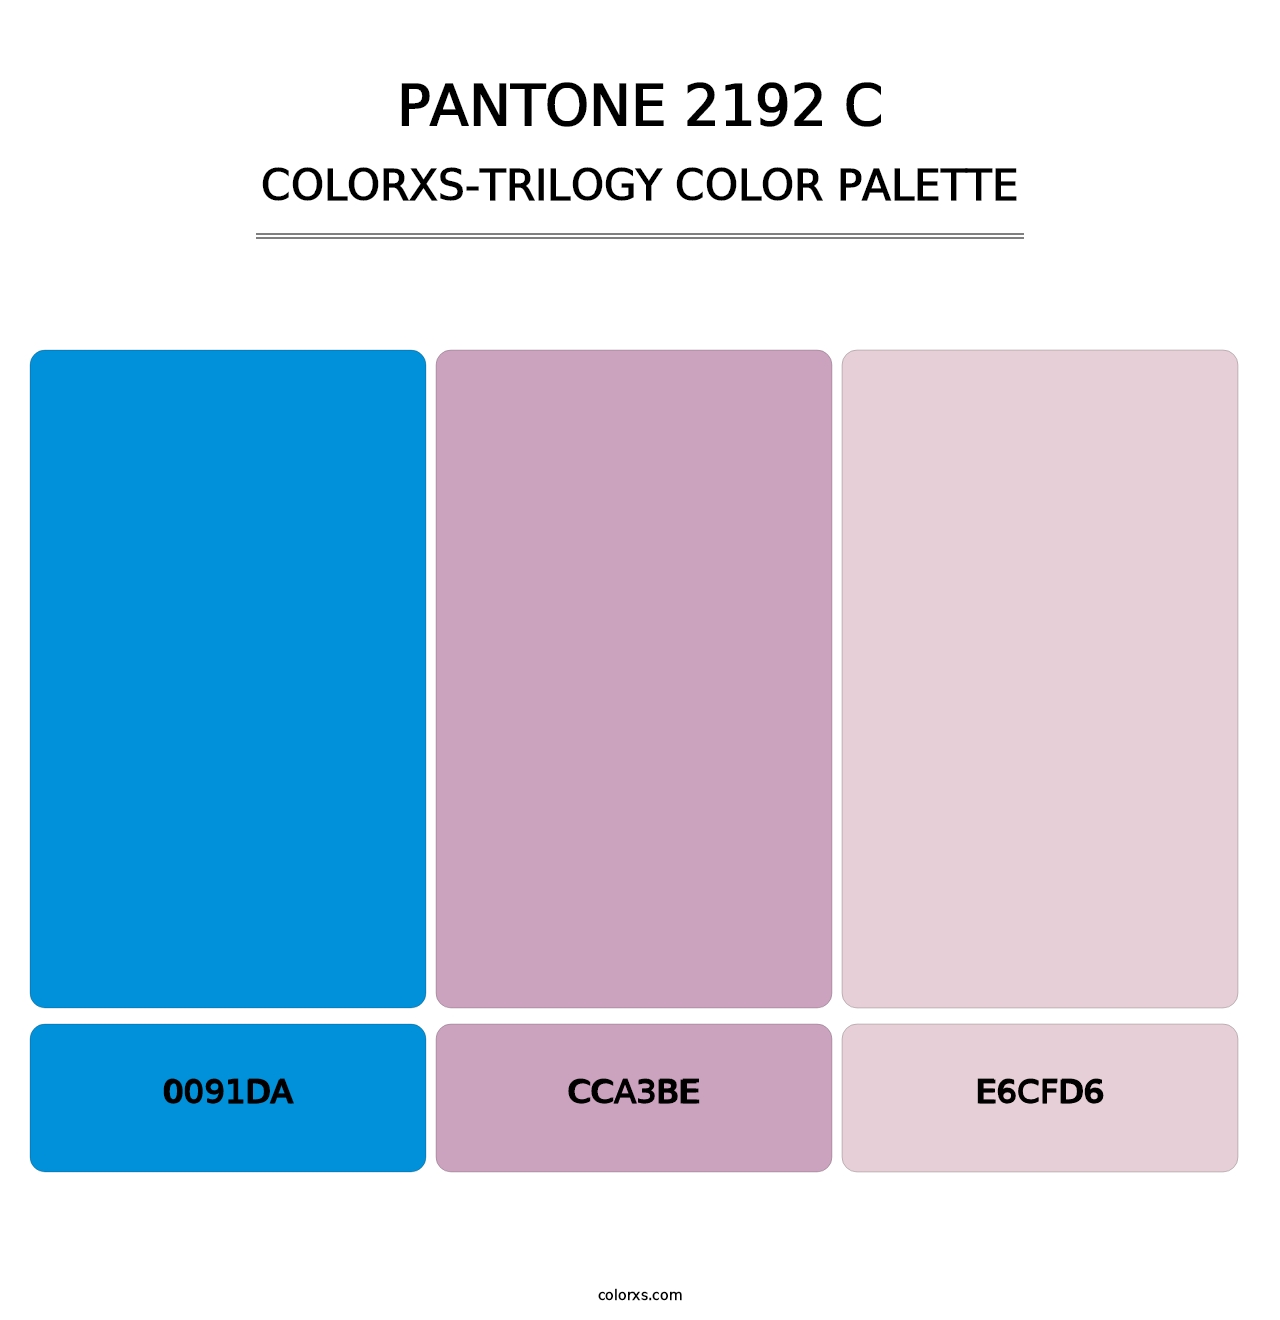 PANTONE 2192 C - Colorxs Trilogy Palette